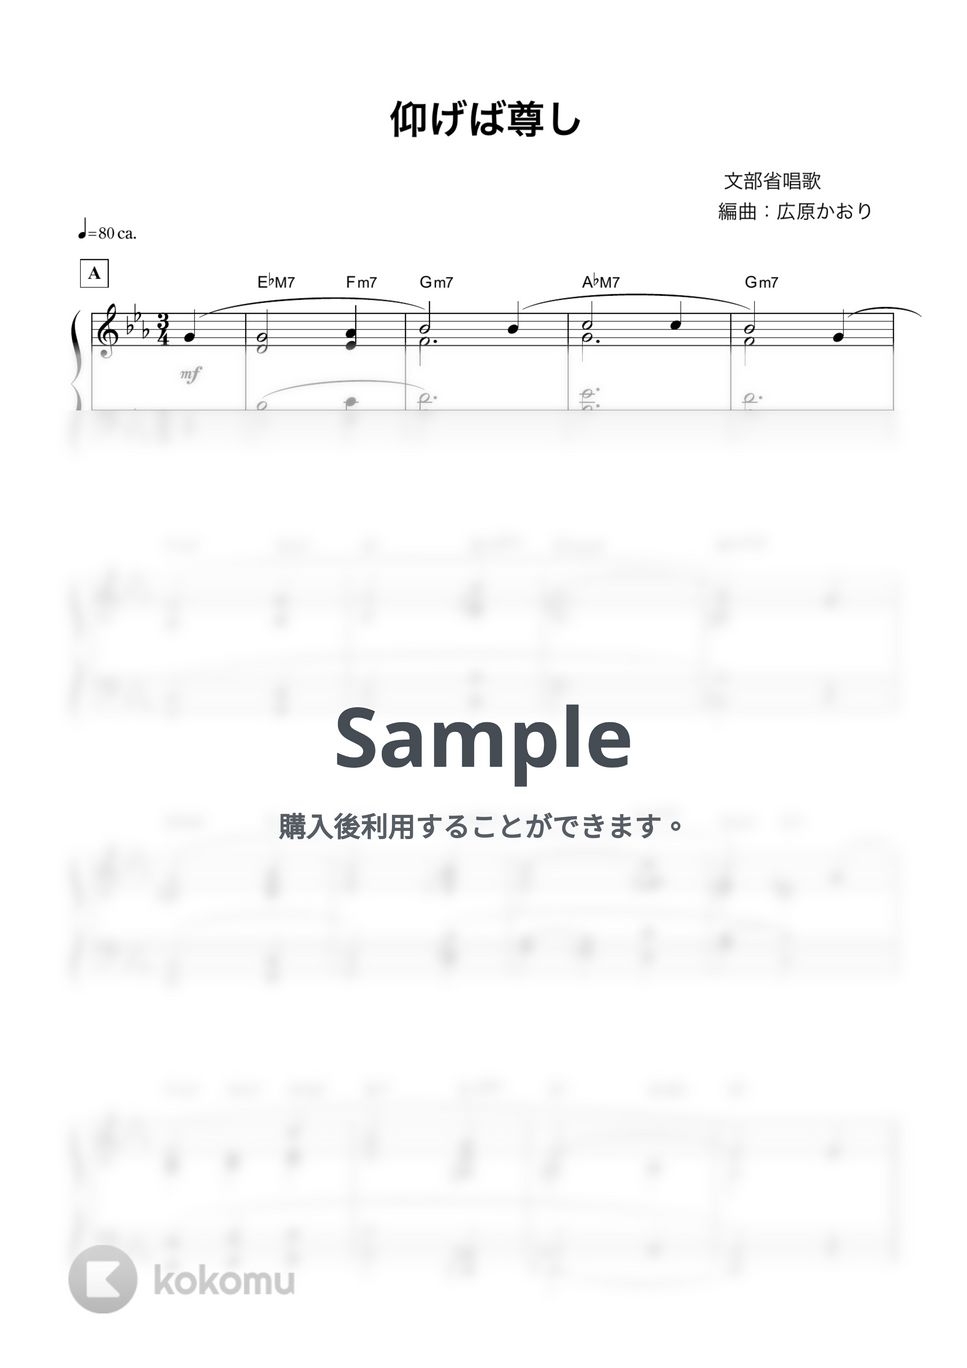 仰げば尊し (ピアノソロ) by 文部省唱歌